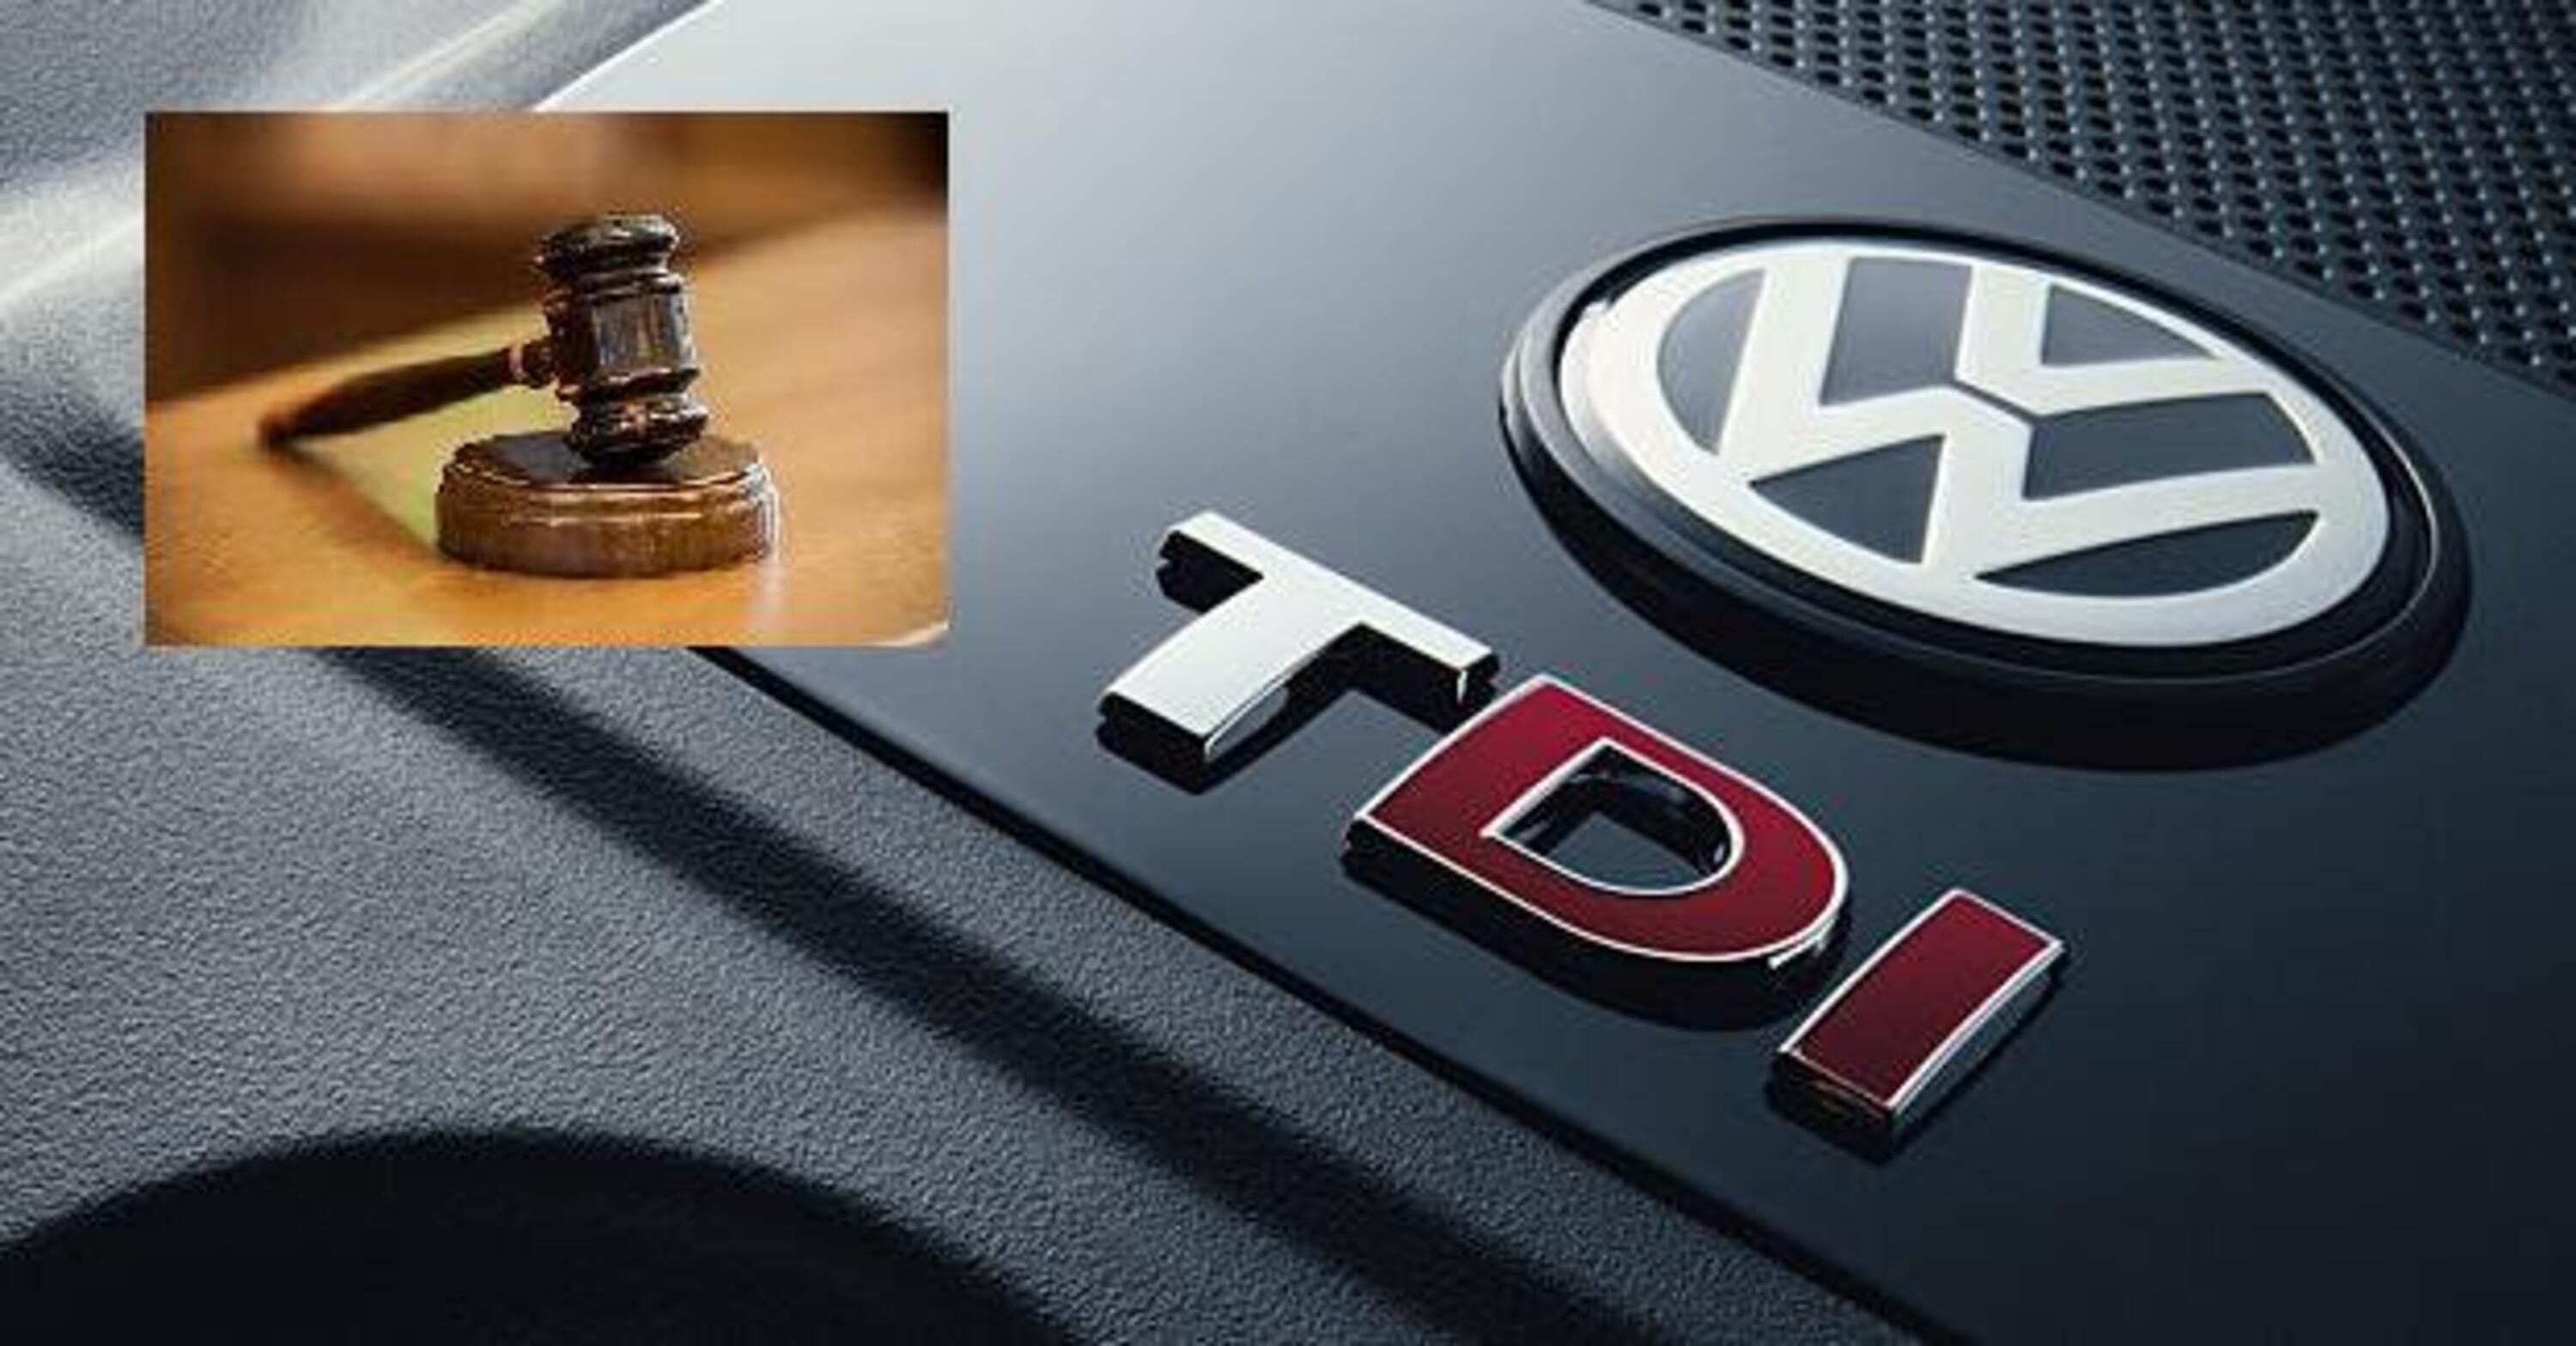 Scandalo emissioni Volkswagen, 2019: Pronti a batter cassa con il Dieselgate dei 3.0 V6 TDI Euro6?